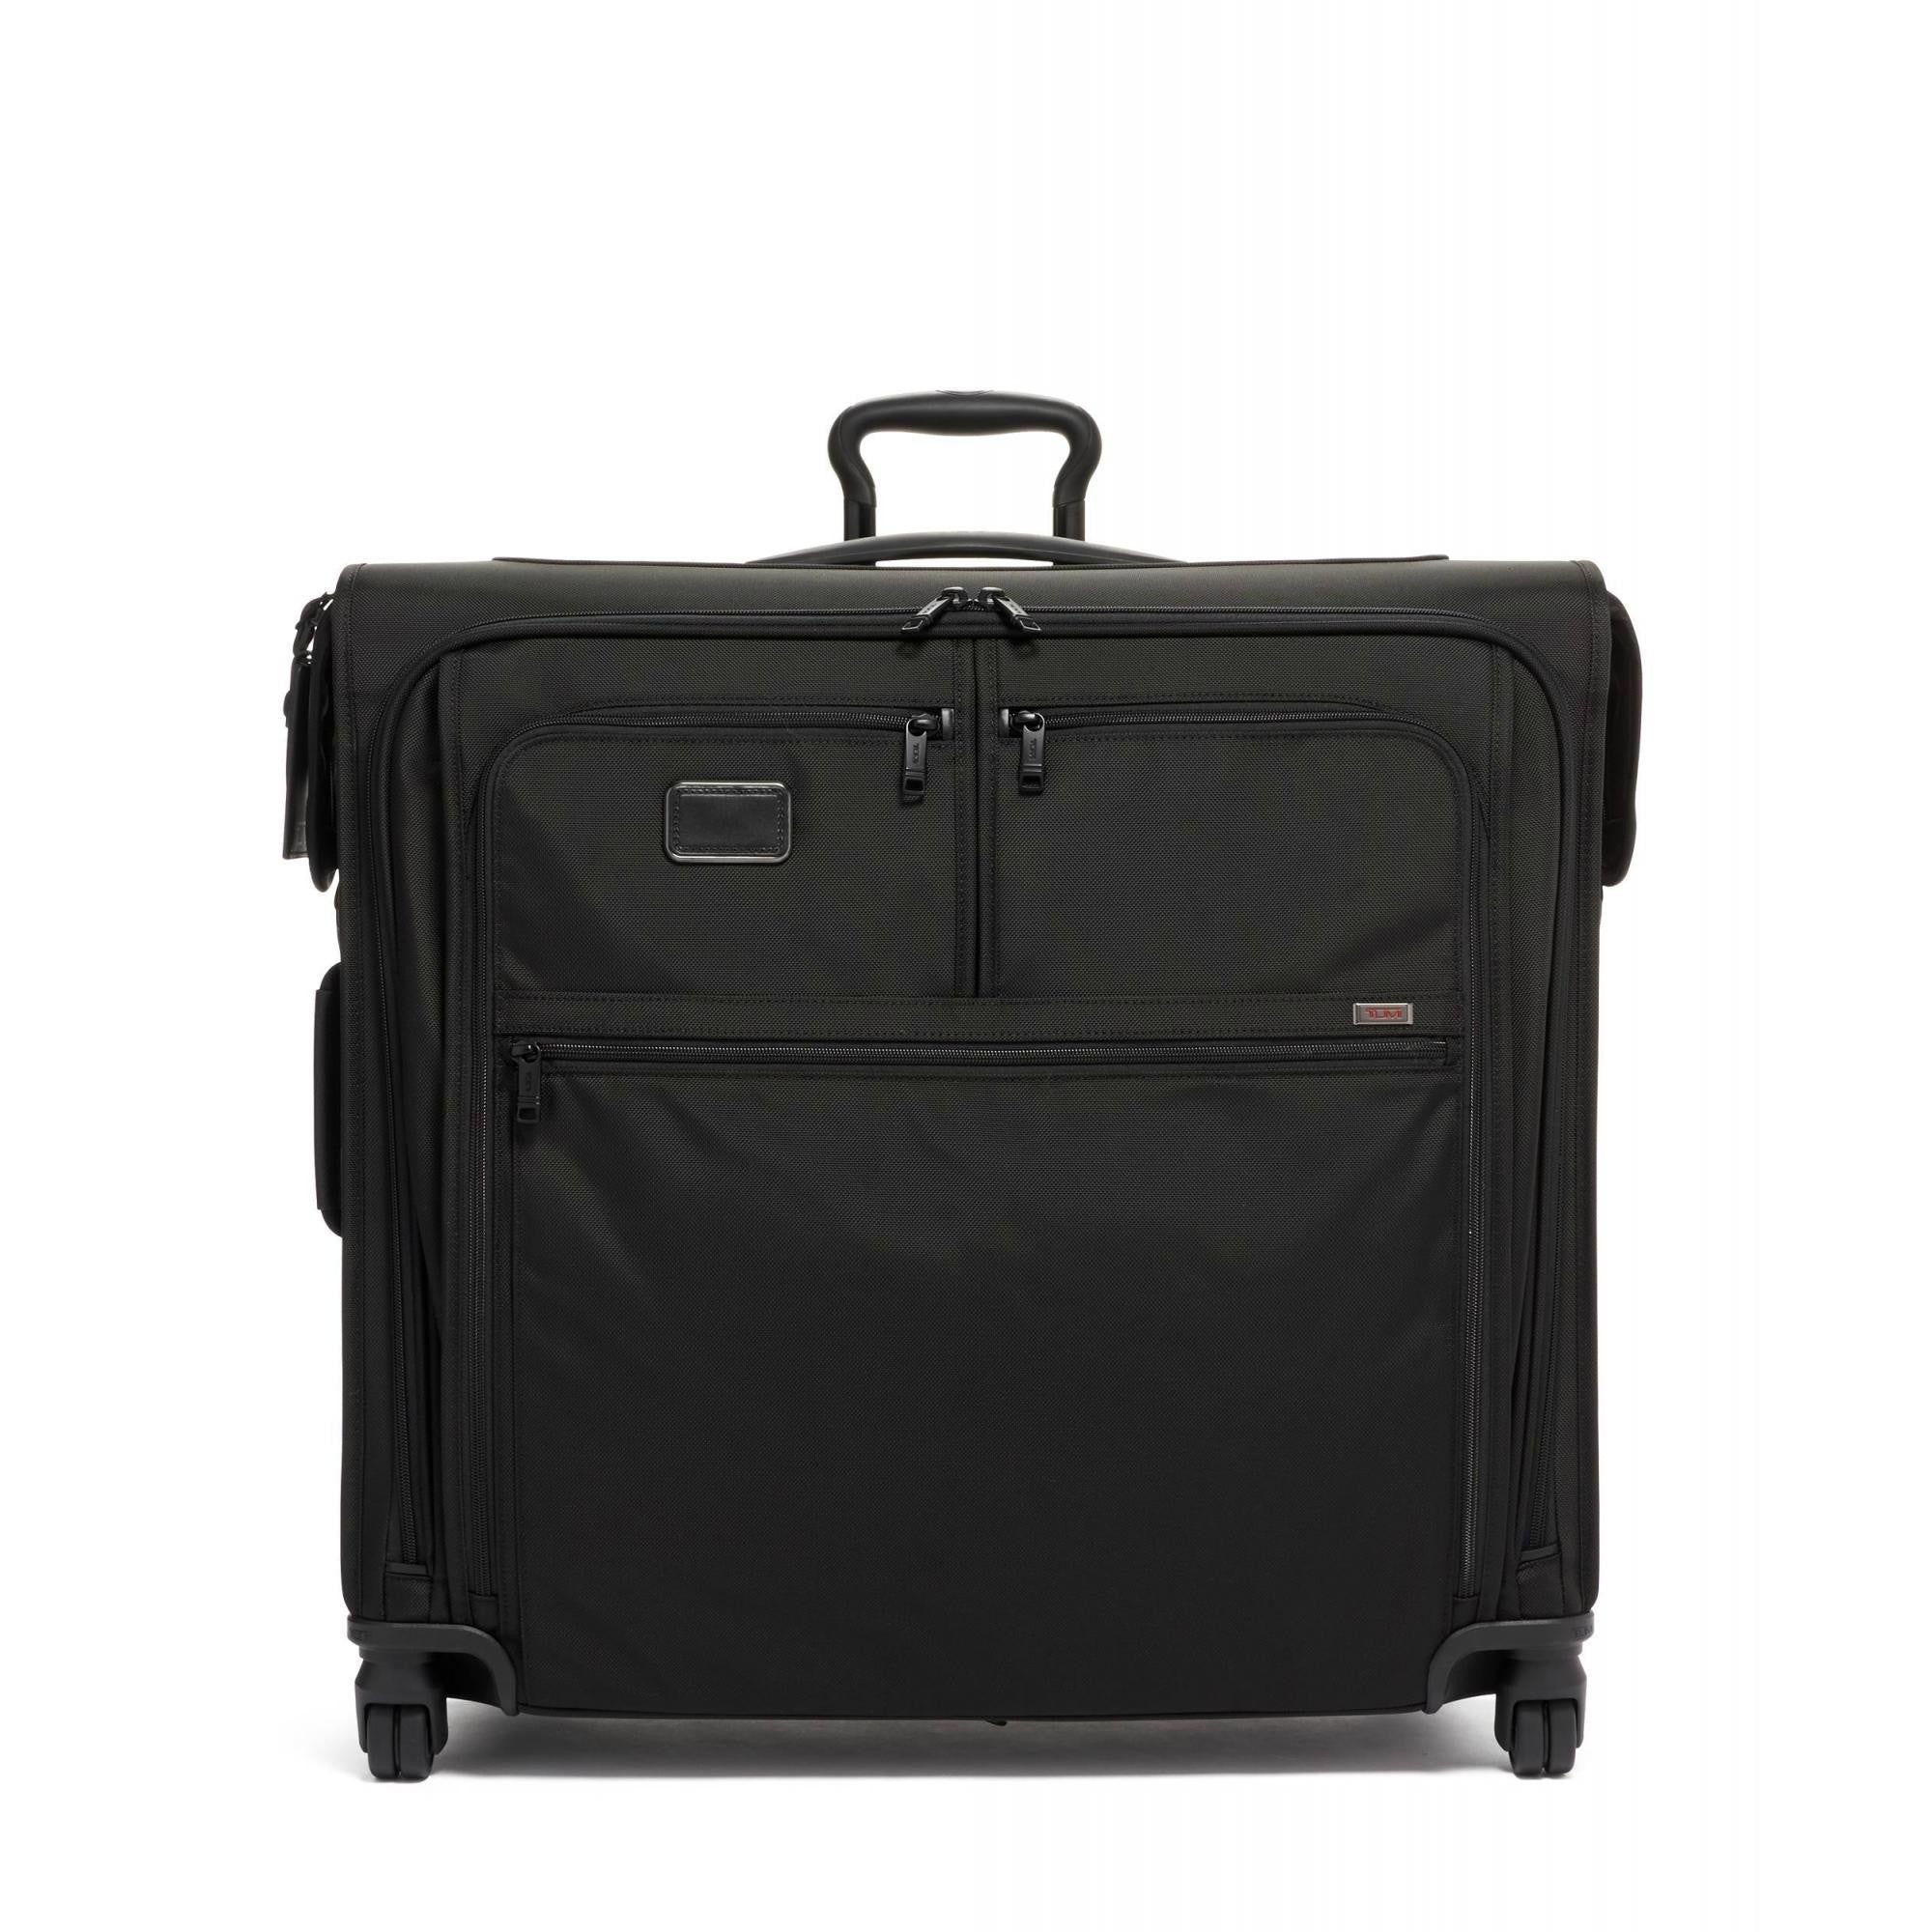 TUMI Alpha 3 Trip 4 Garment Bag Luggage Pros